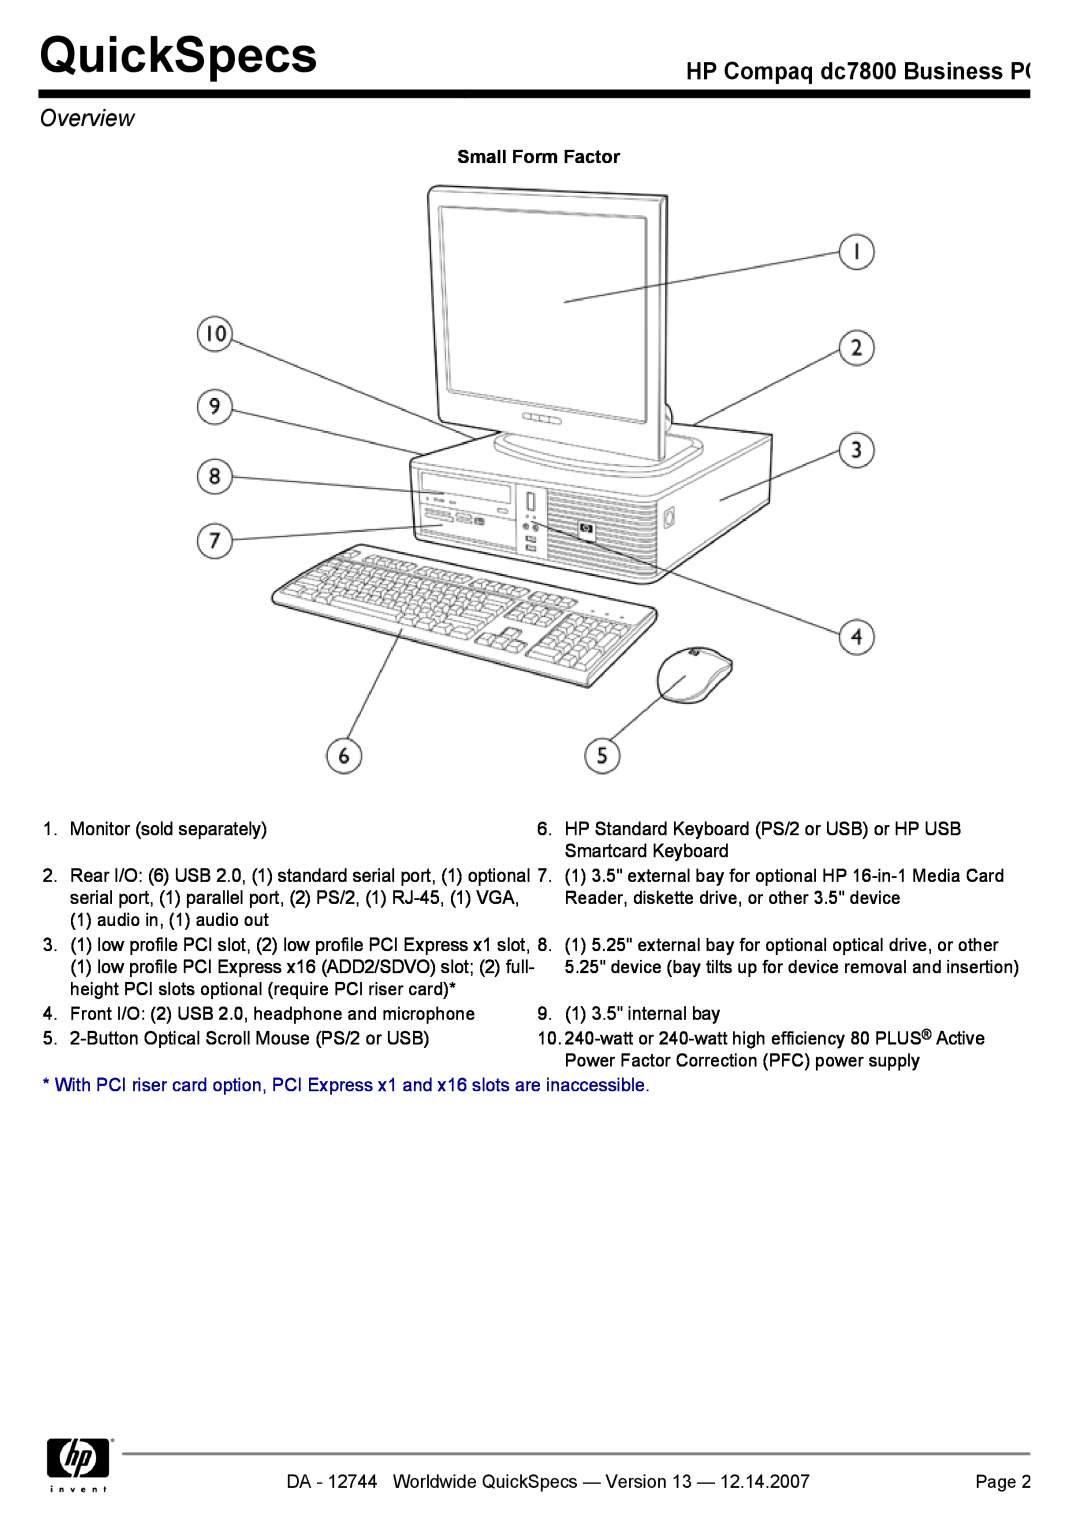 Compaq manual QuickSpecs, HP Compaq dc7800 Business PC, Overview, Small Form Factor 